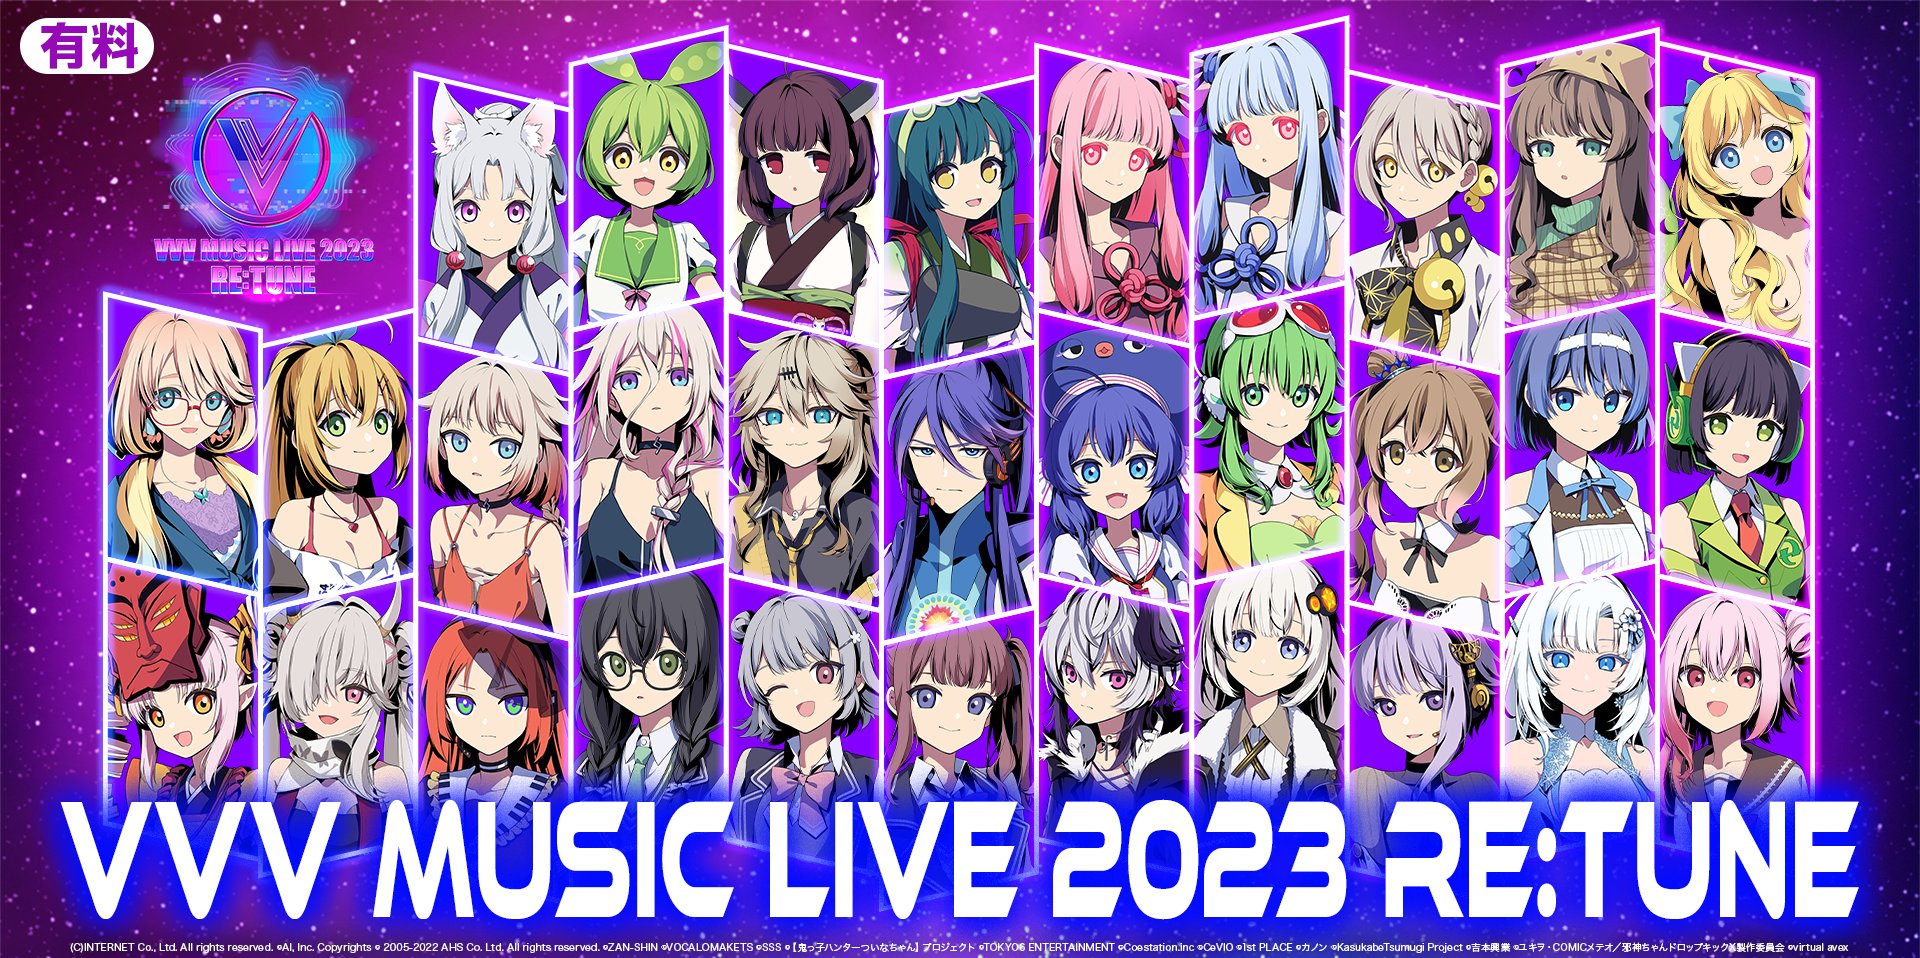 【EVENT INFO】昨年6月にOИE/IAも出演したバーチャルミュージックライブ『VVV MUSIC LIVE 2023』再配信決定!!